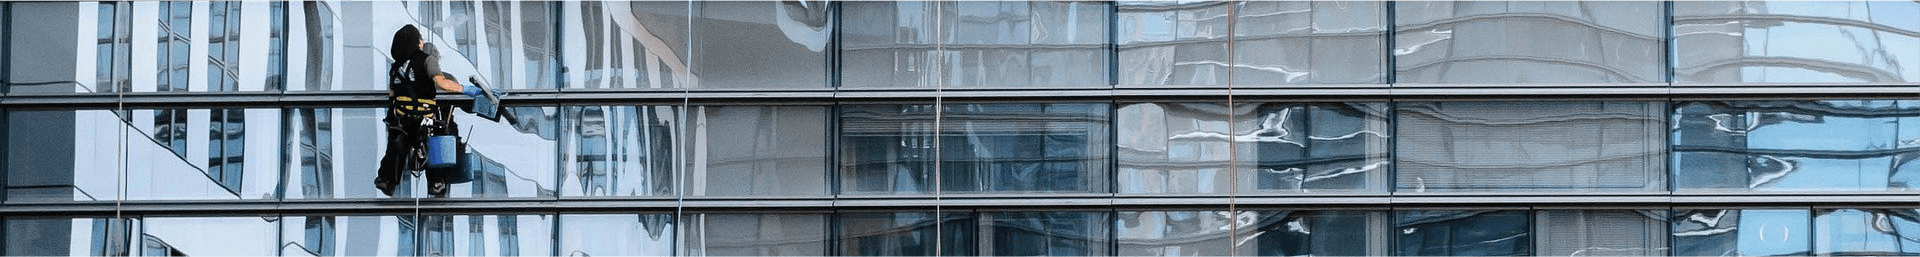 Ein Bild von der Glasfassade eines großen Firmengebäudes. Vor der Glasfassade ist eine ausgebildete Fachkraft zu sehen, die als Teil der Sonderreinigung die Fassade reinigt.